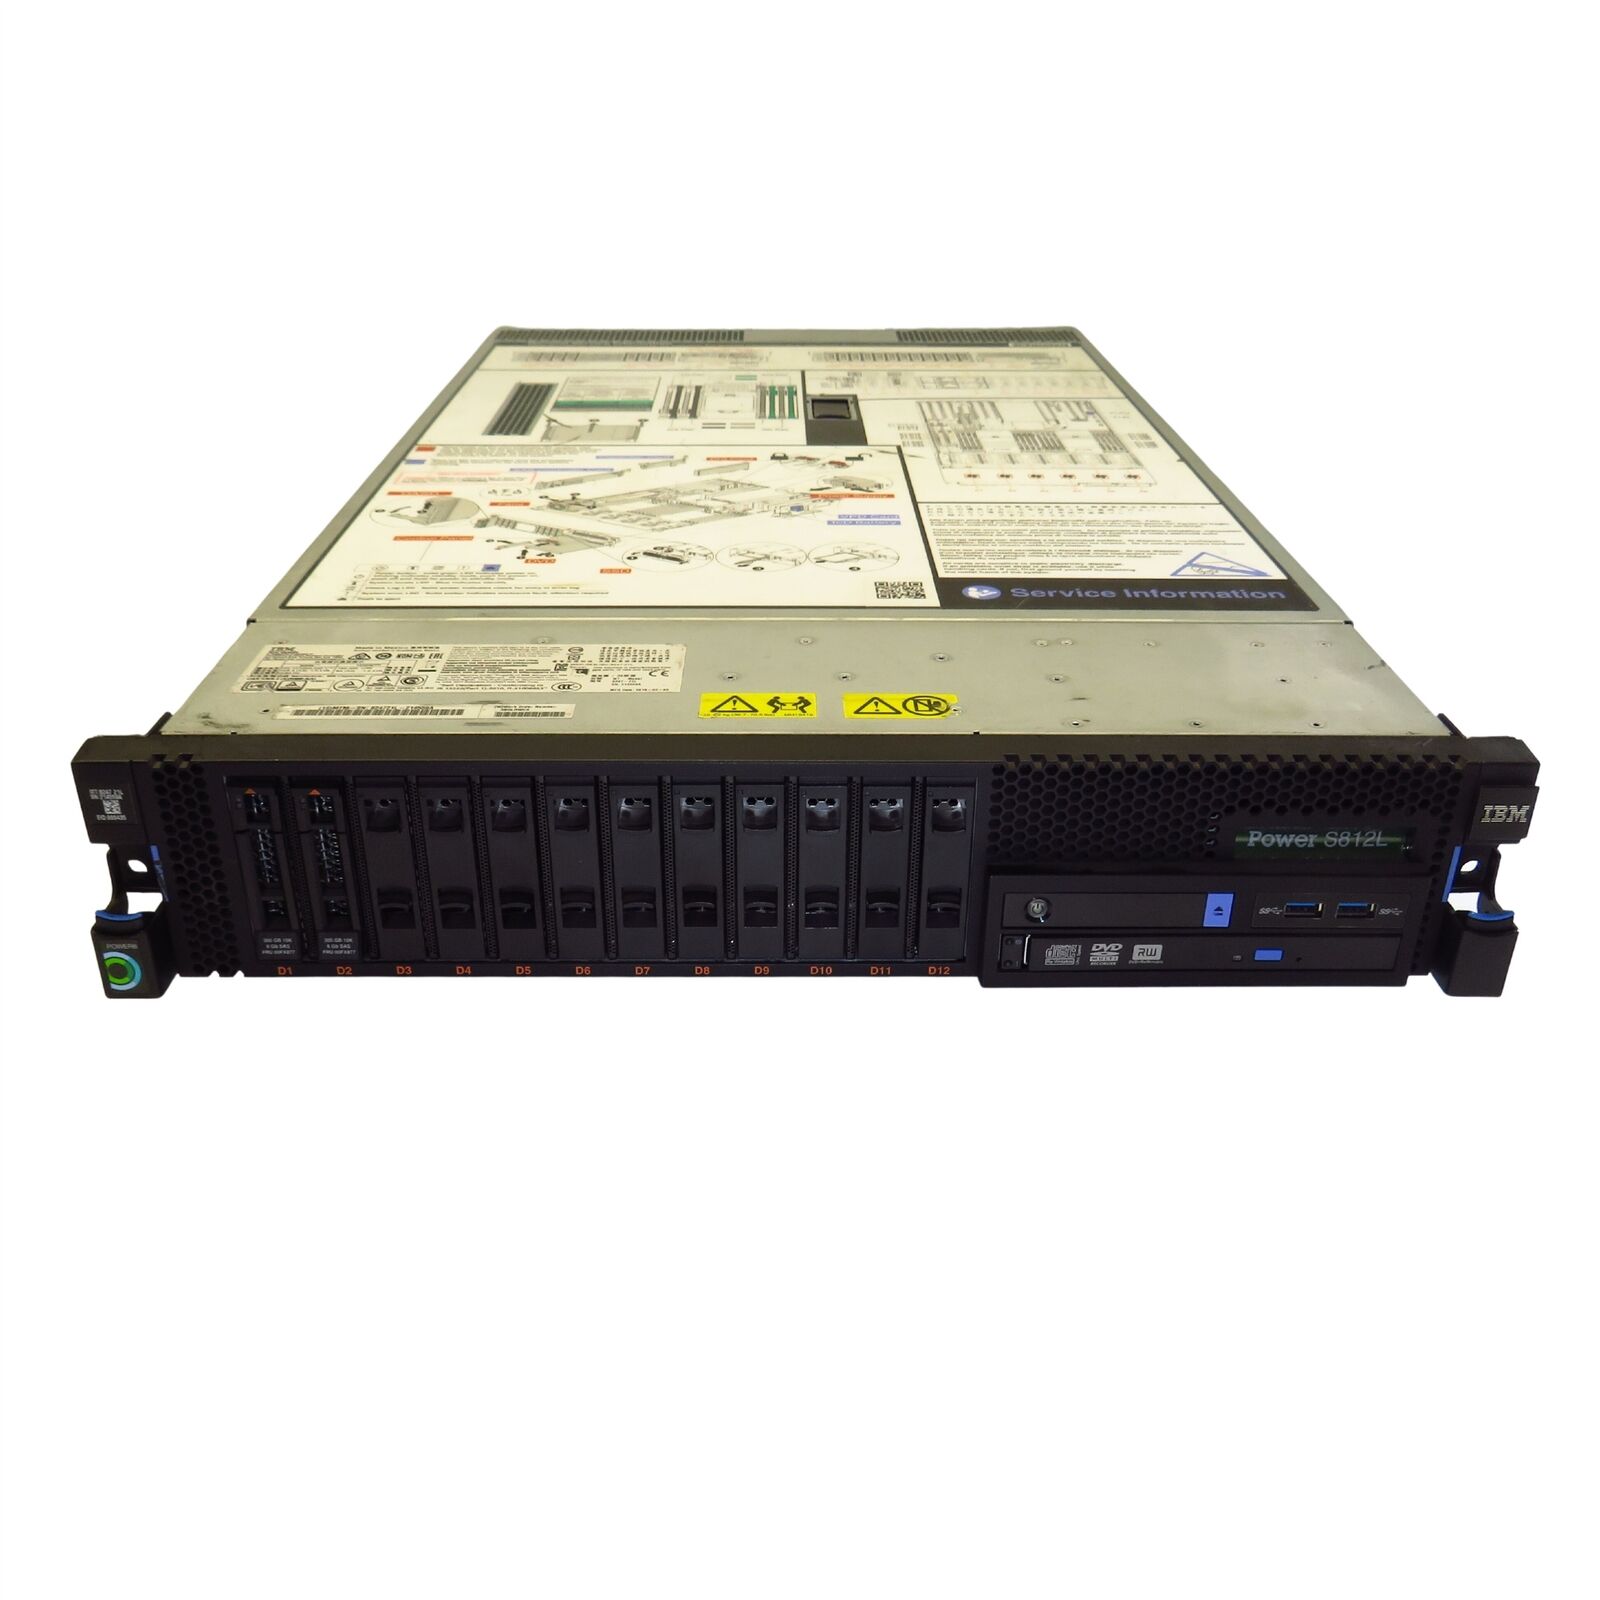 IBM 8247-21L S812L ELPD 10-core 3.42 GHz Power8 Processor Linux Server